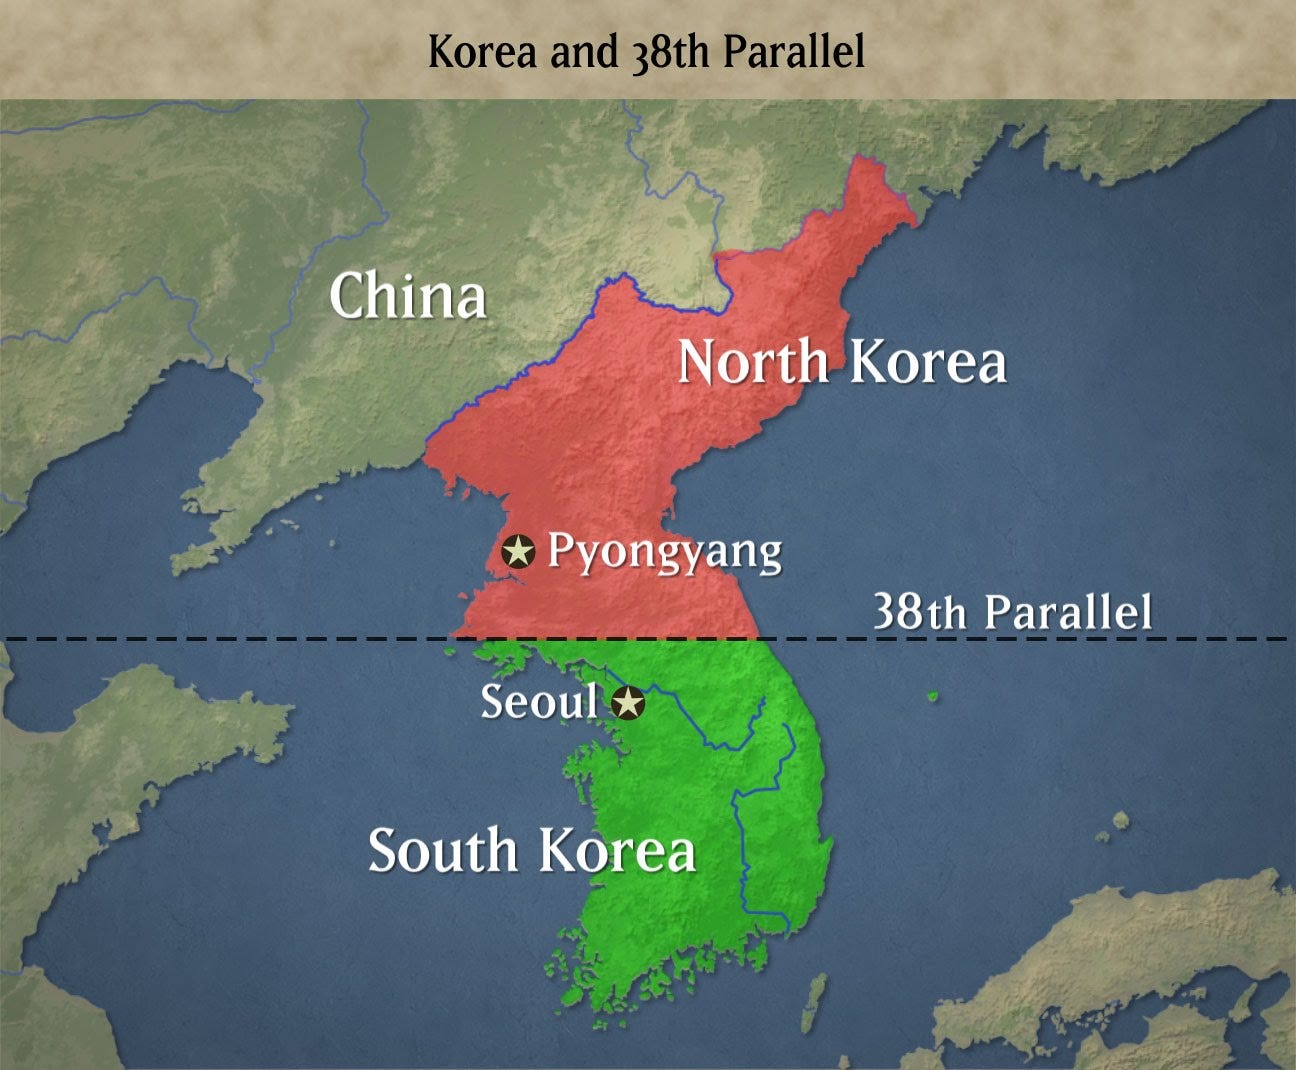 Los mundos paralelos de la península coreana - Revista Arena - Medium